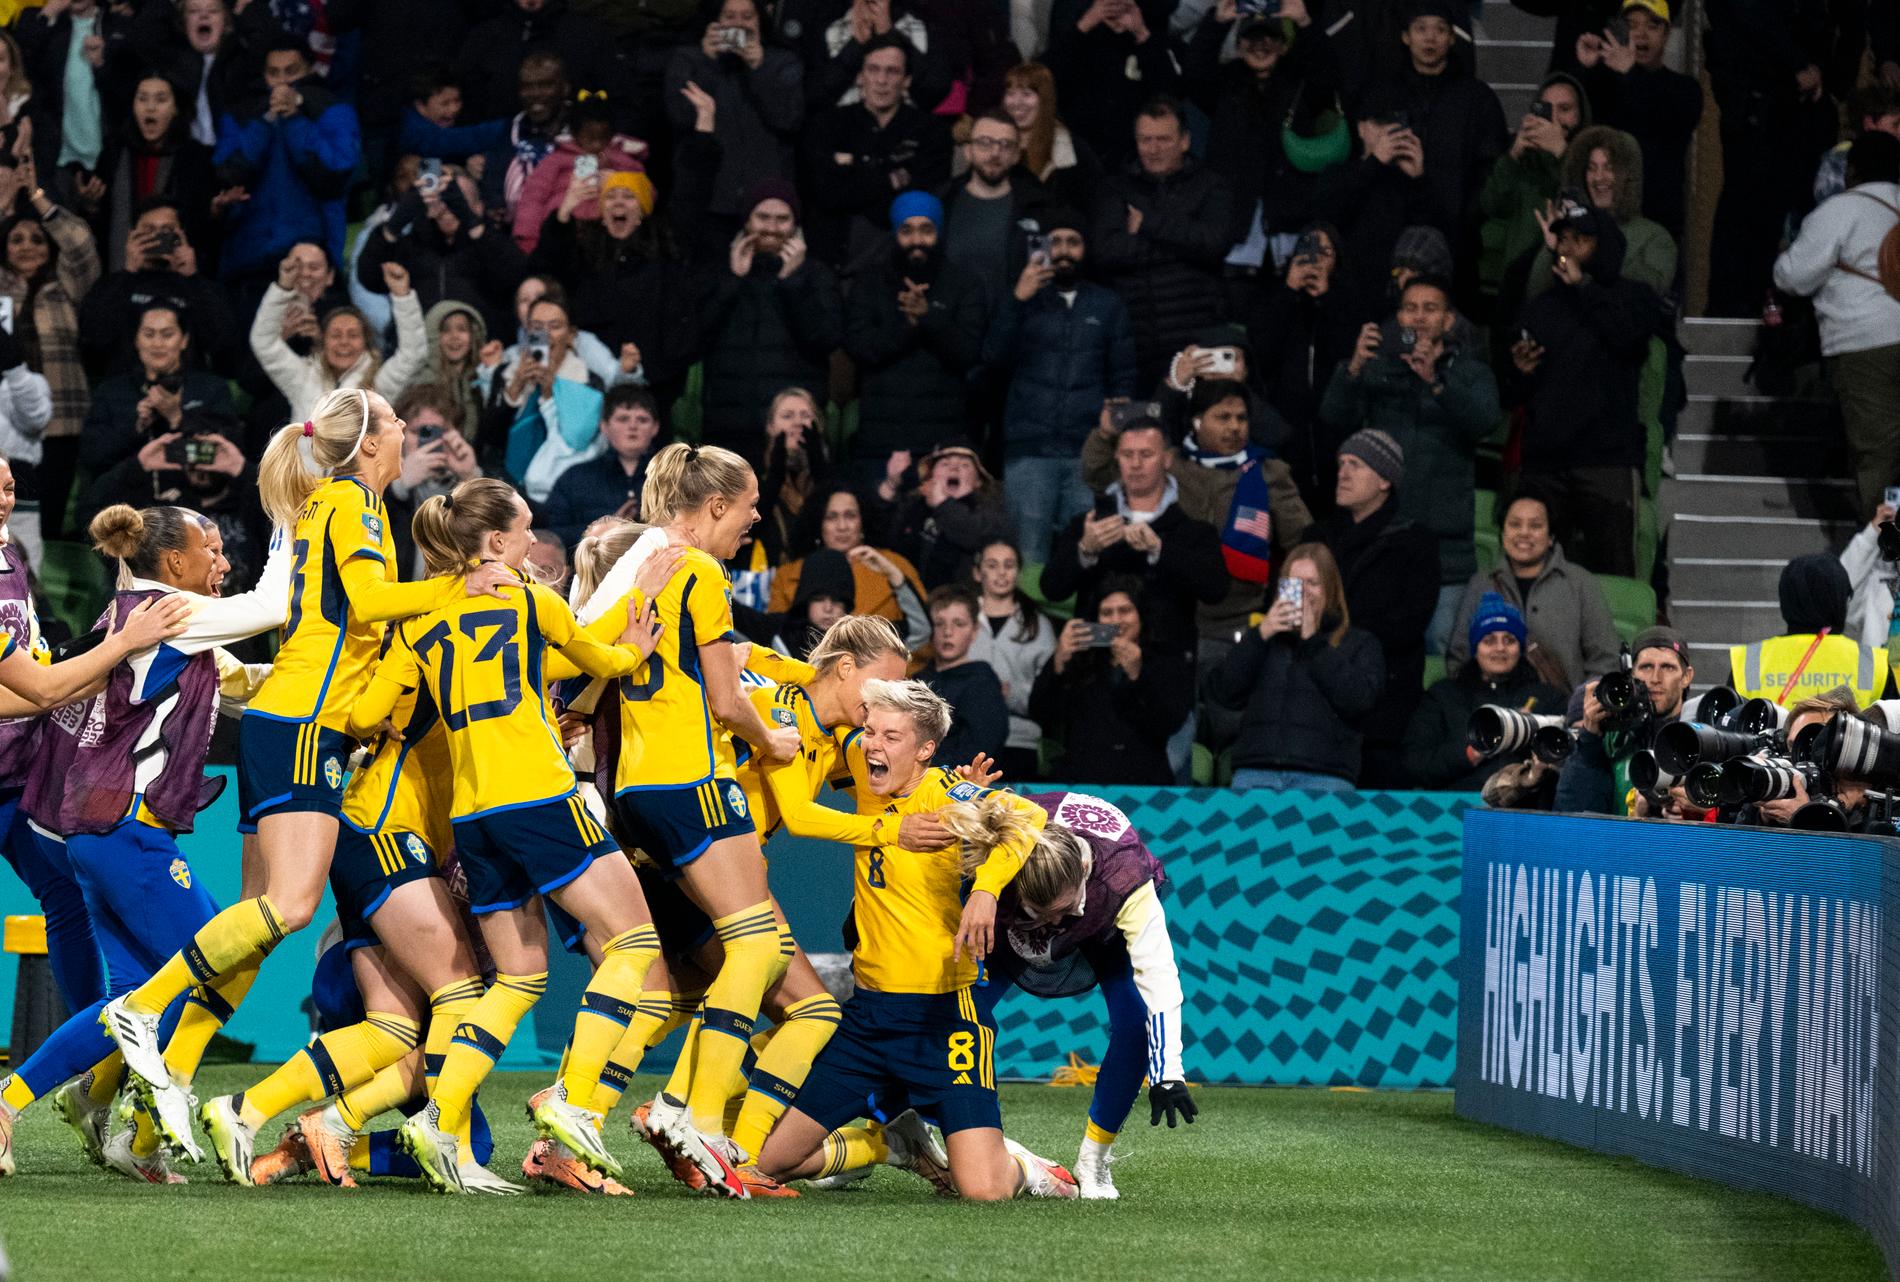 De svenska spelarna jublar efter att ha vunnit den avgörande straffläggningen i söndagens åttondelsfinal mellan Sverige och USA.